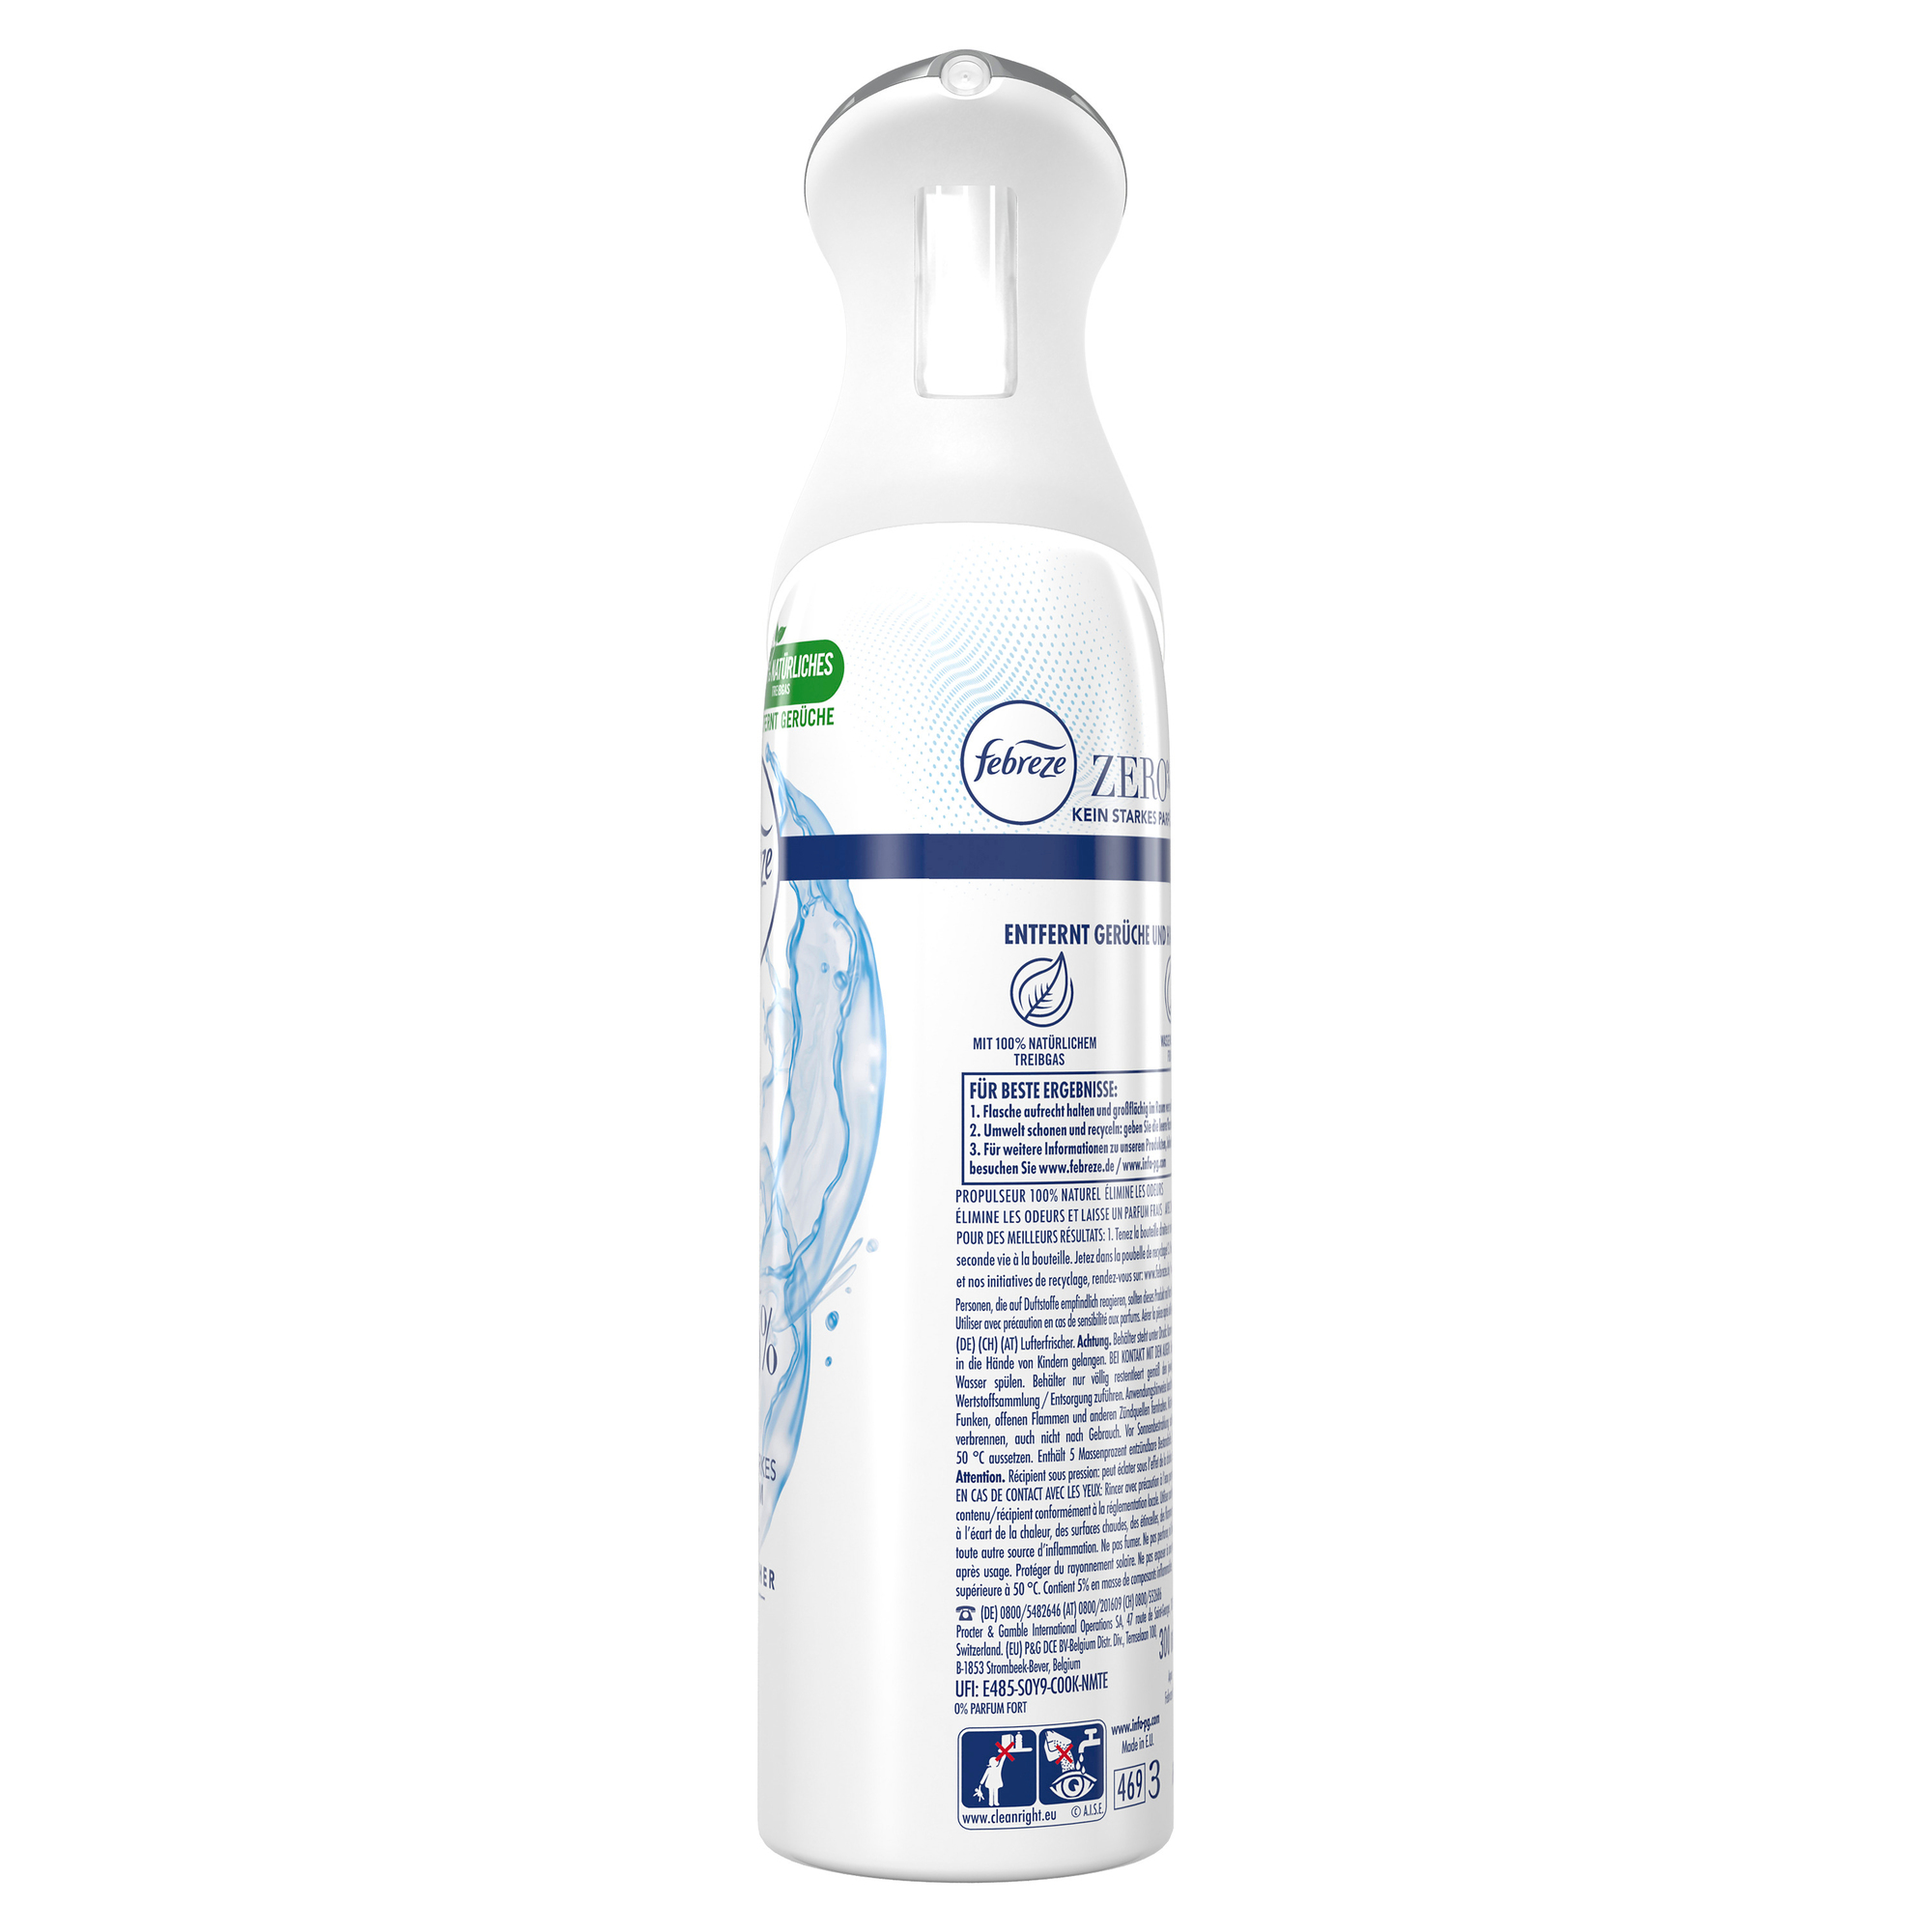 febreze Lufterfrischer-Spray ZERO% Aqua, 300 ml 8006540460795 bei   günstig kaufen